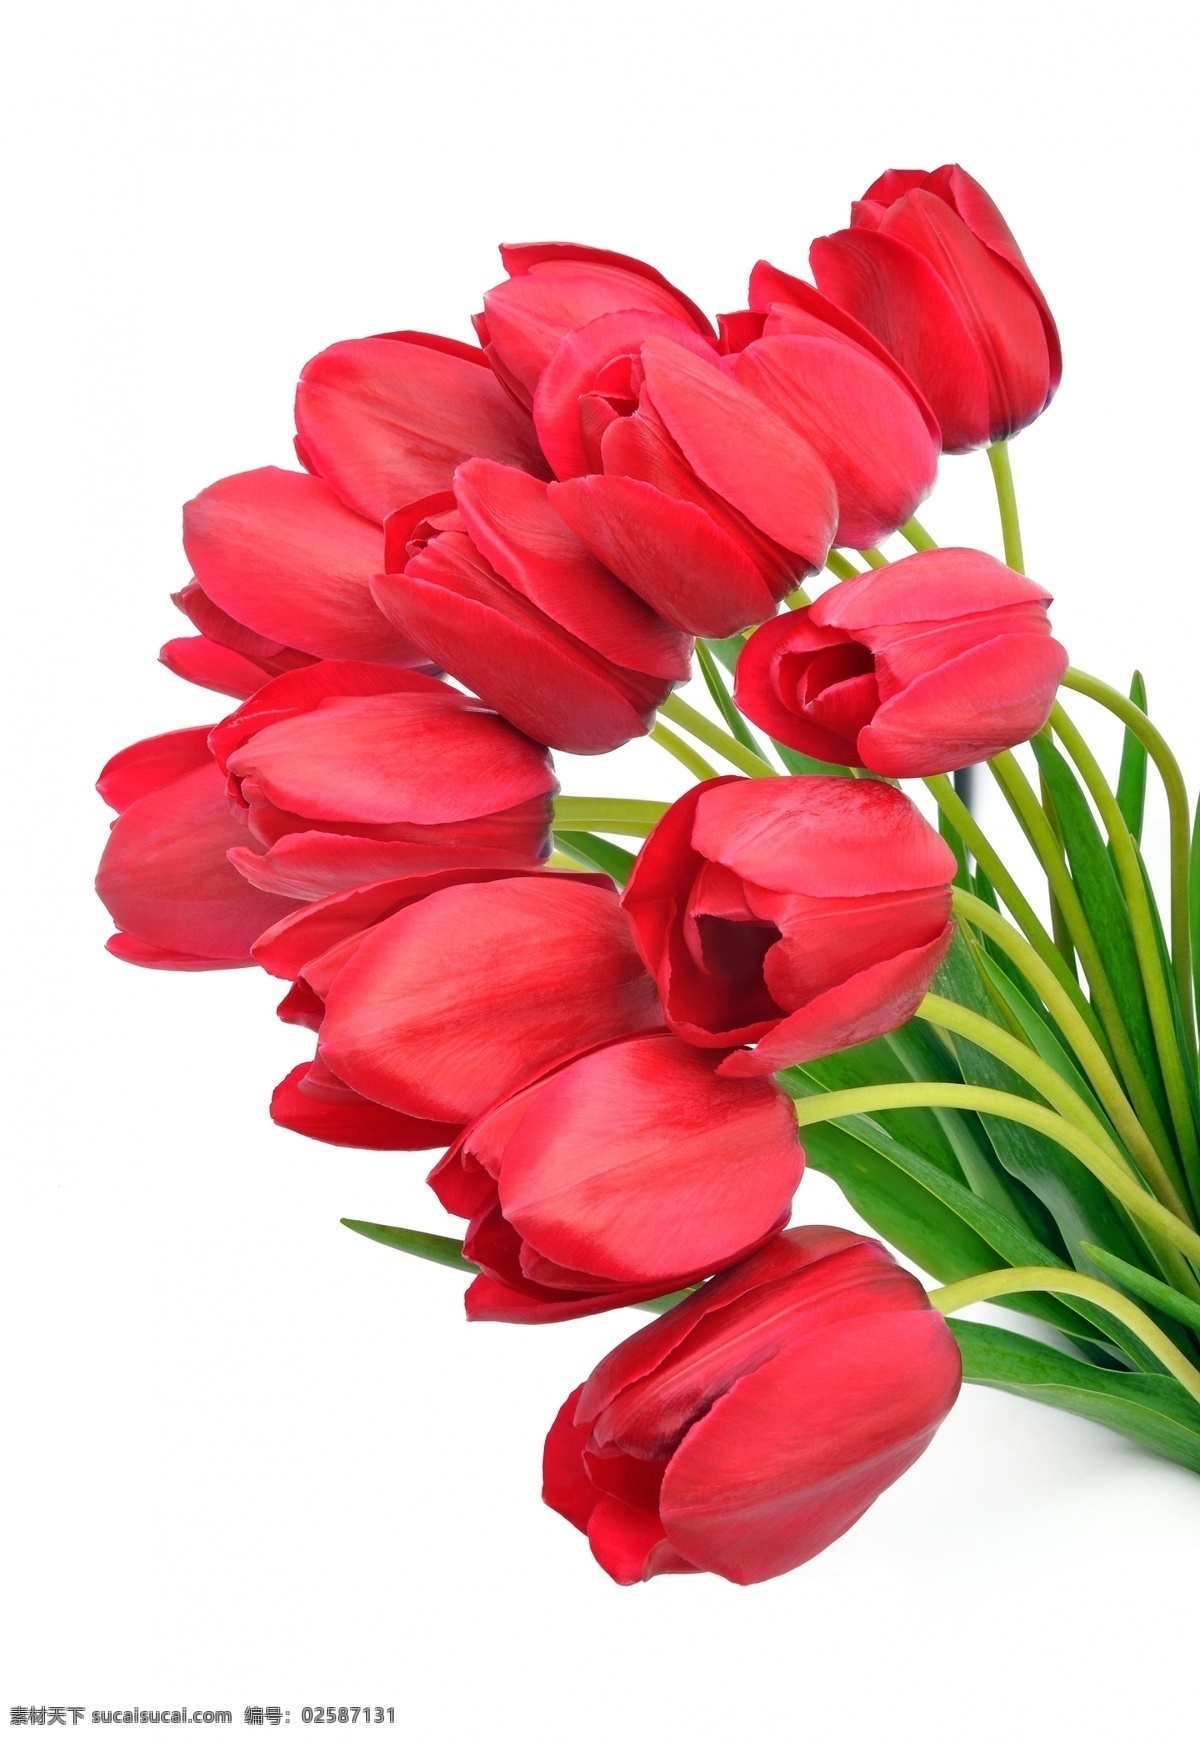 美丽 红色 郁金香花 花 鲜花 花朵 红色花 绿叶 鲜花背景 鲜花摄影 花草树木 生物世界